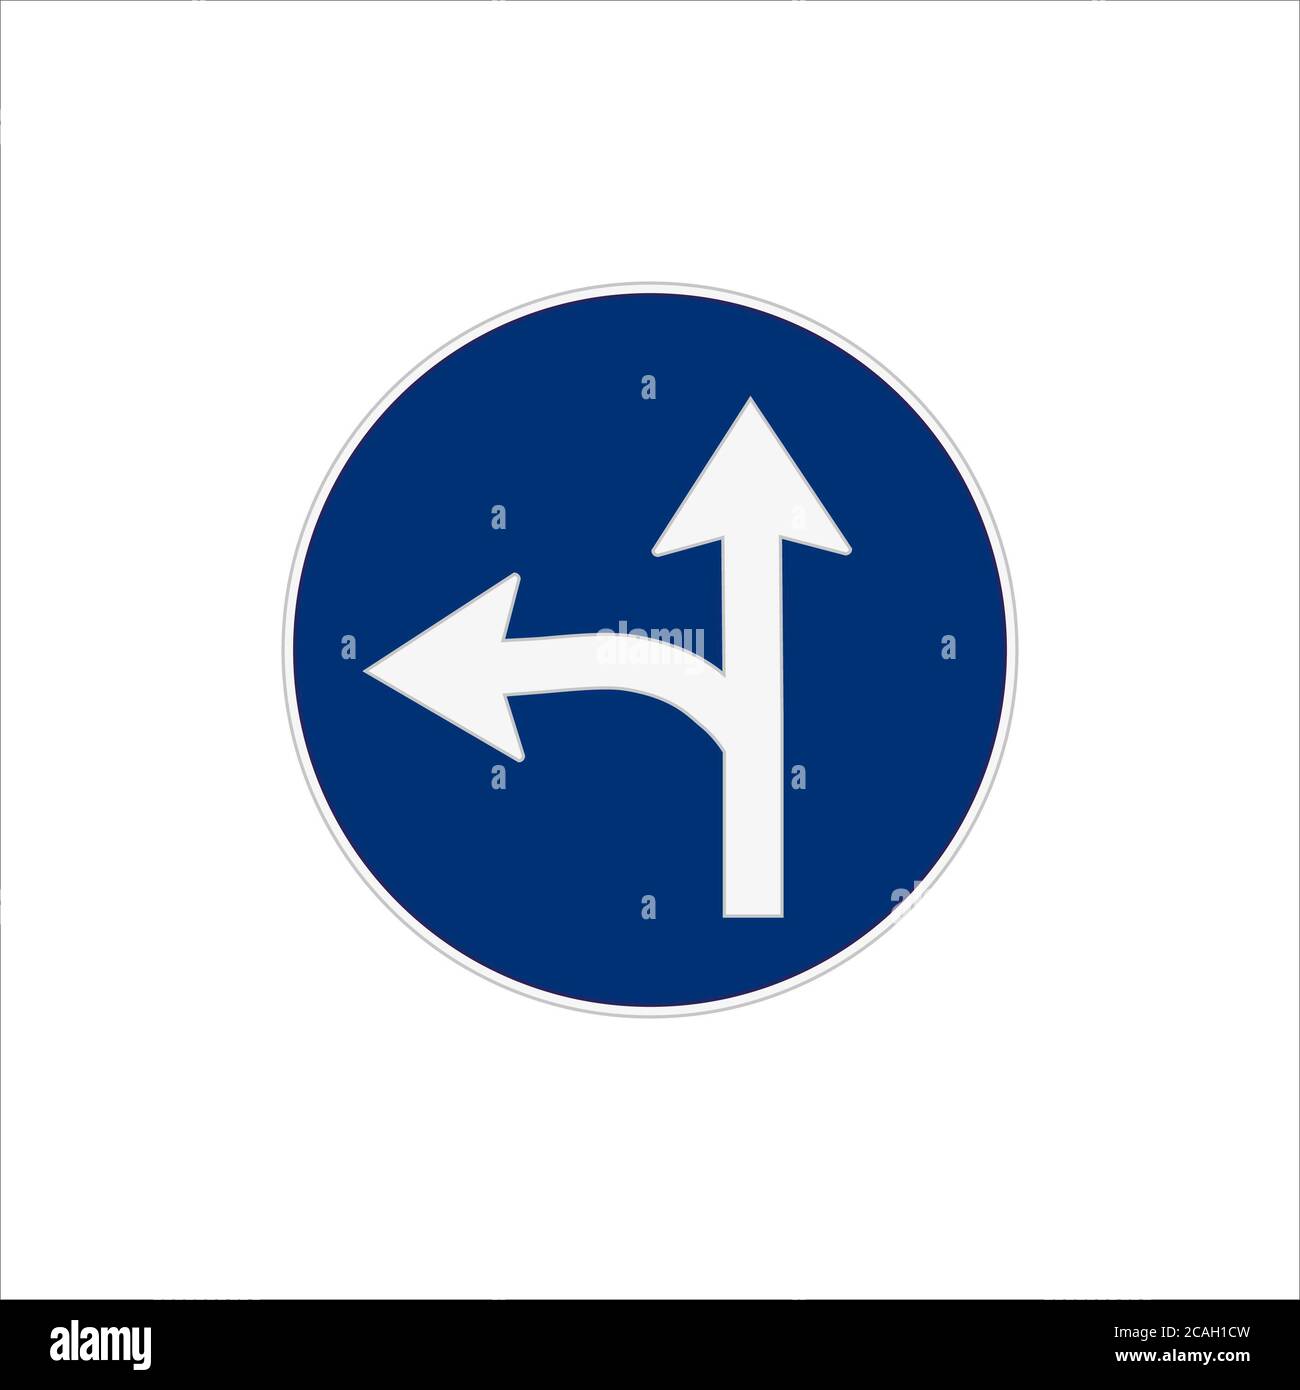 Immagine di un procedere dritto o svoltare a sinistra segnale stradale icona isolata su sfondo bianco Foto Stock